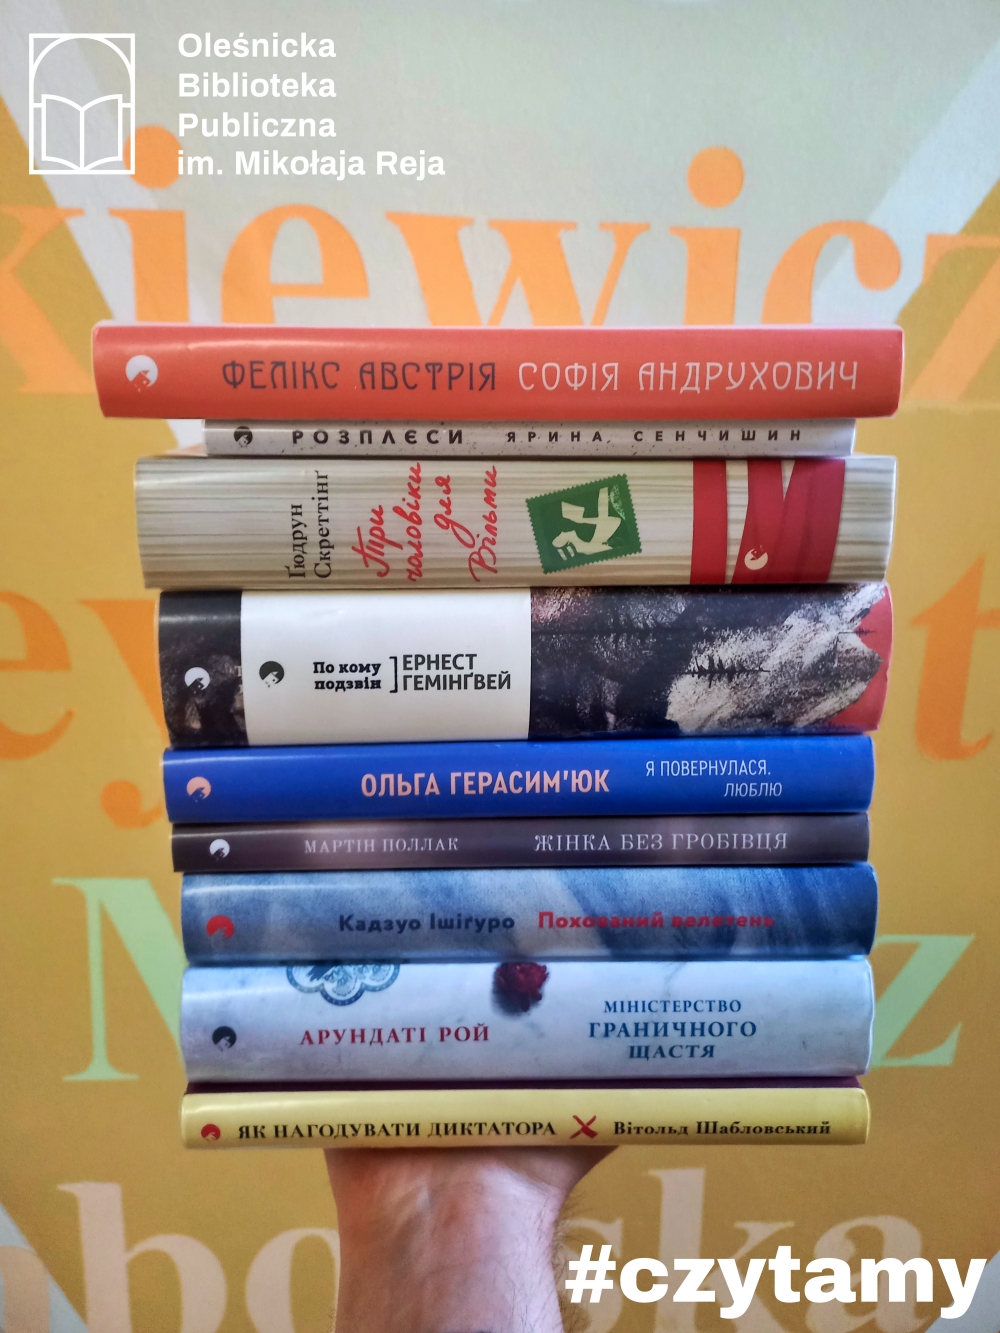 Książki w języku ukraińskim dostępne w bibliotece!